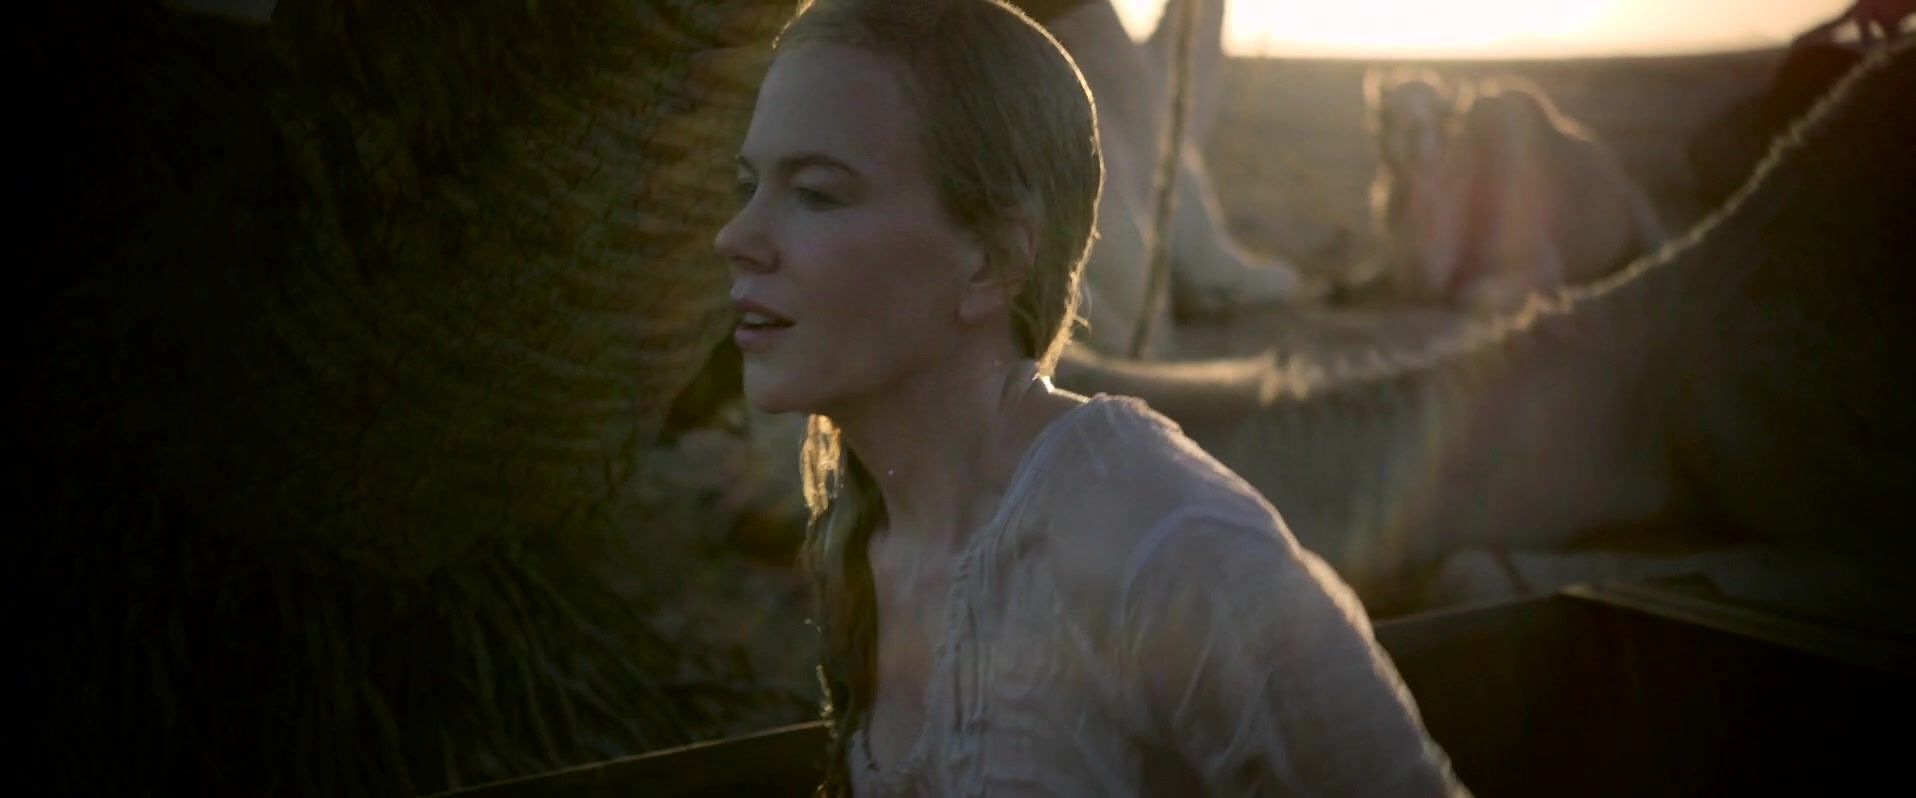 DateInAsia Nicole Kidman nude - Queen of the Desert (2016) Ducha - 1